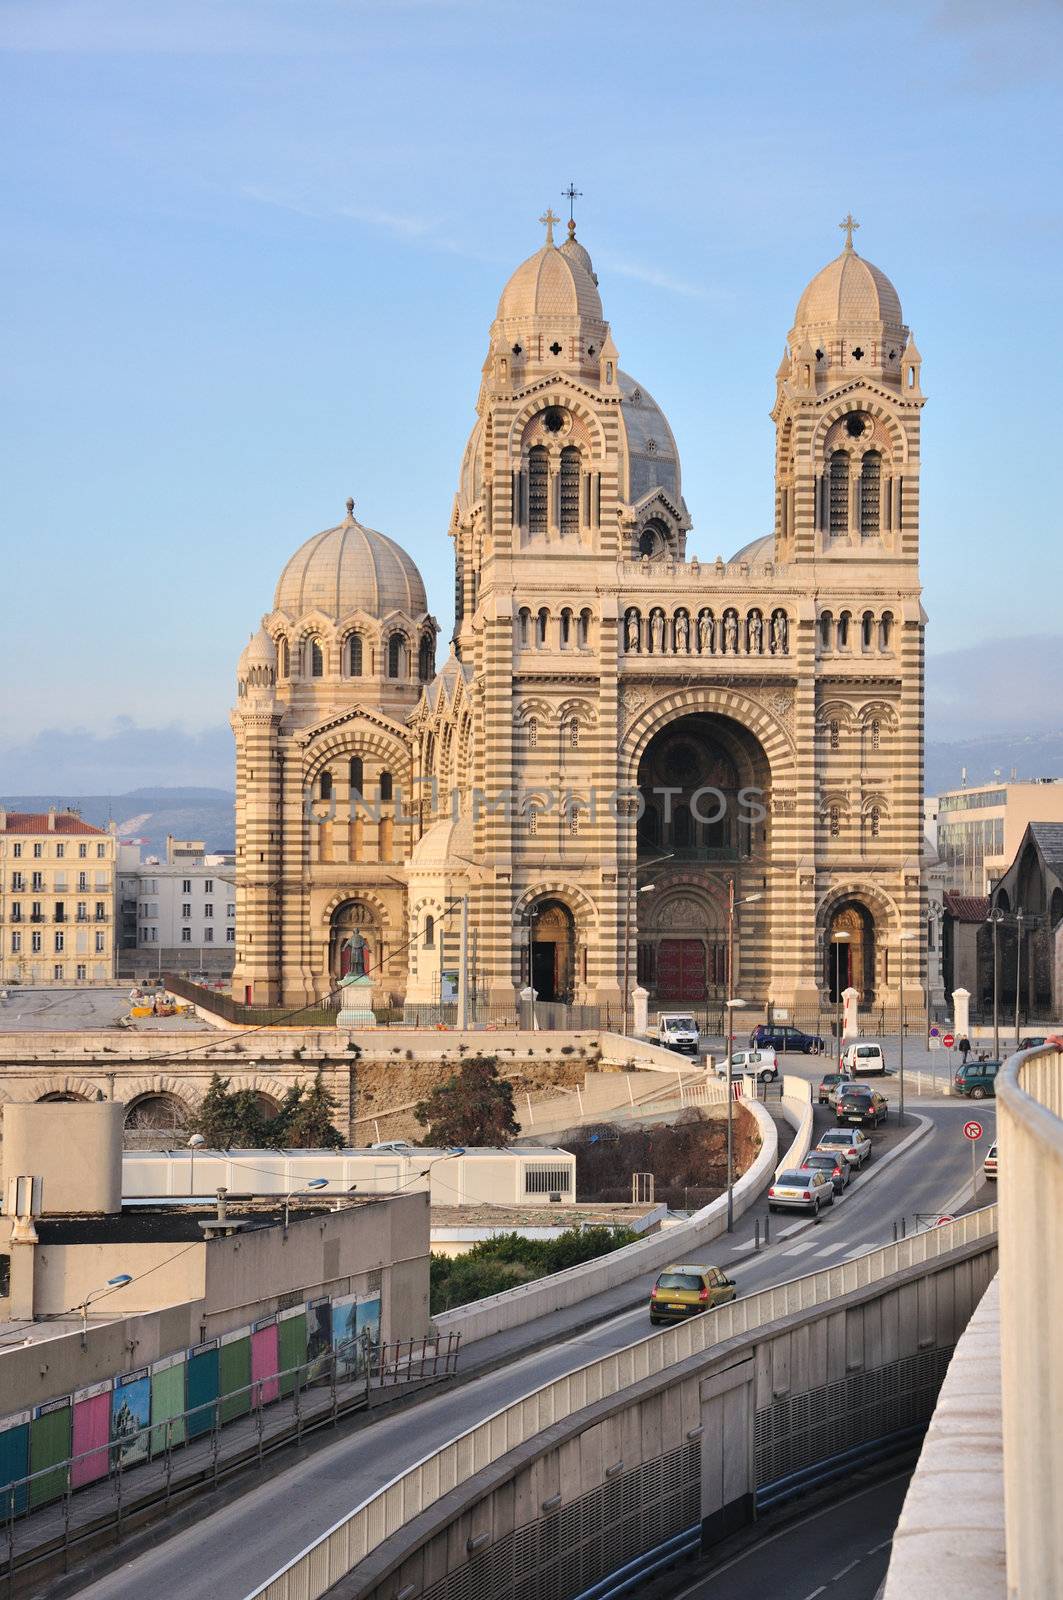 Cathedrale de la Major, Marseille, France by vyskoczilova